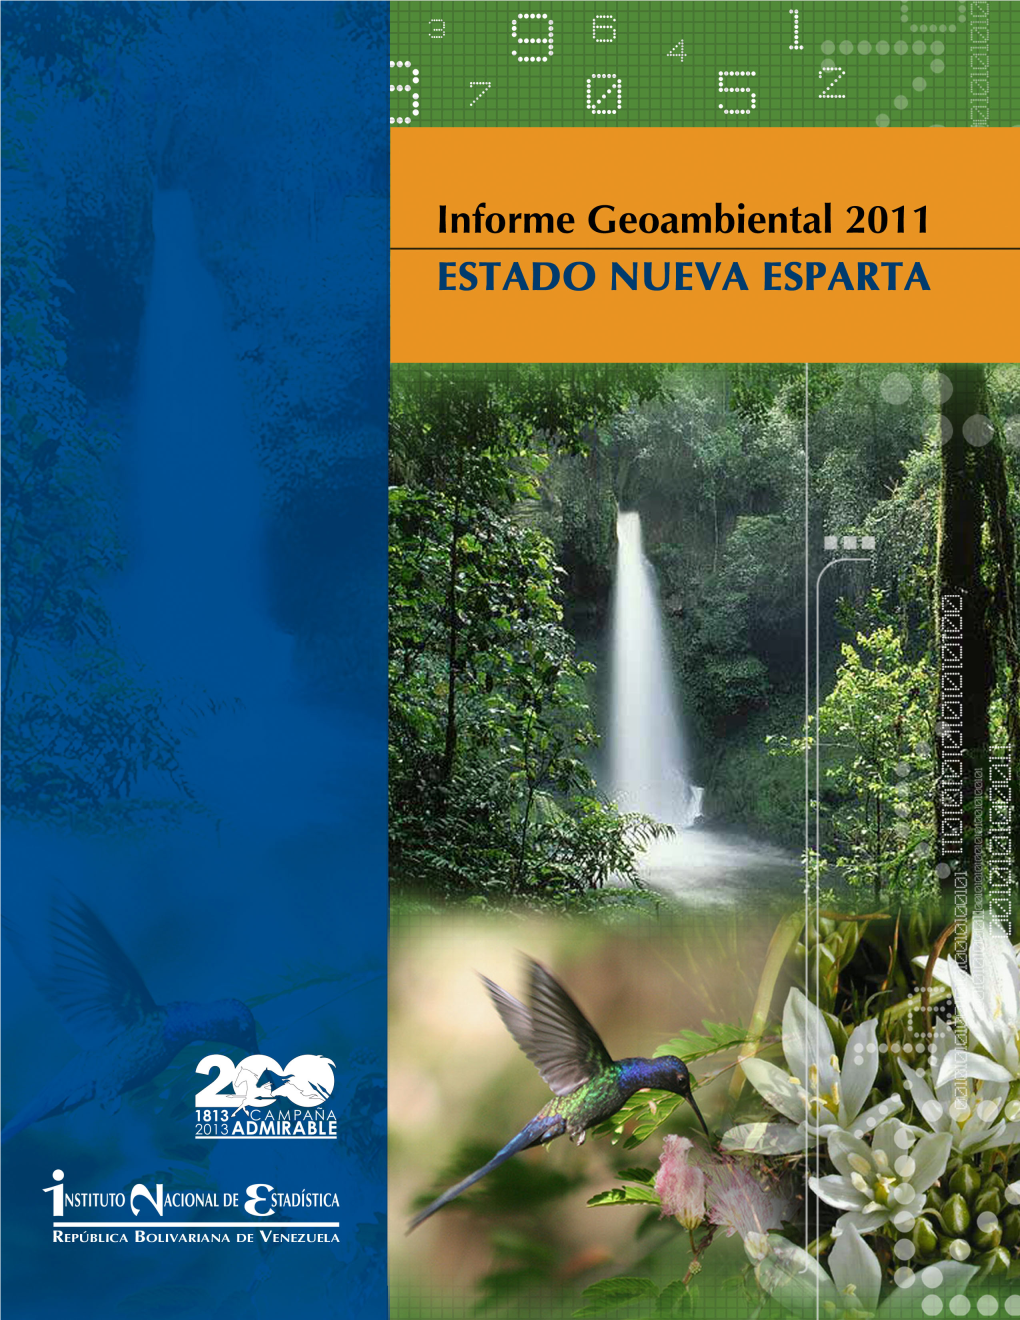 Informe Geoambiental Estado Nueva Esparta 2011